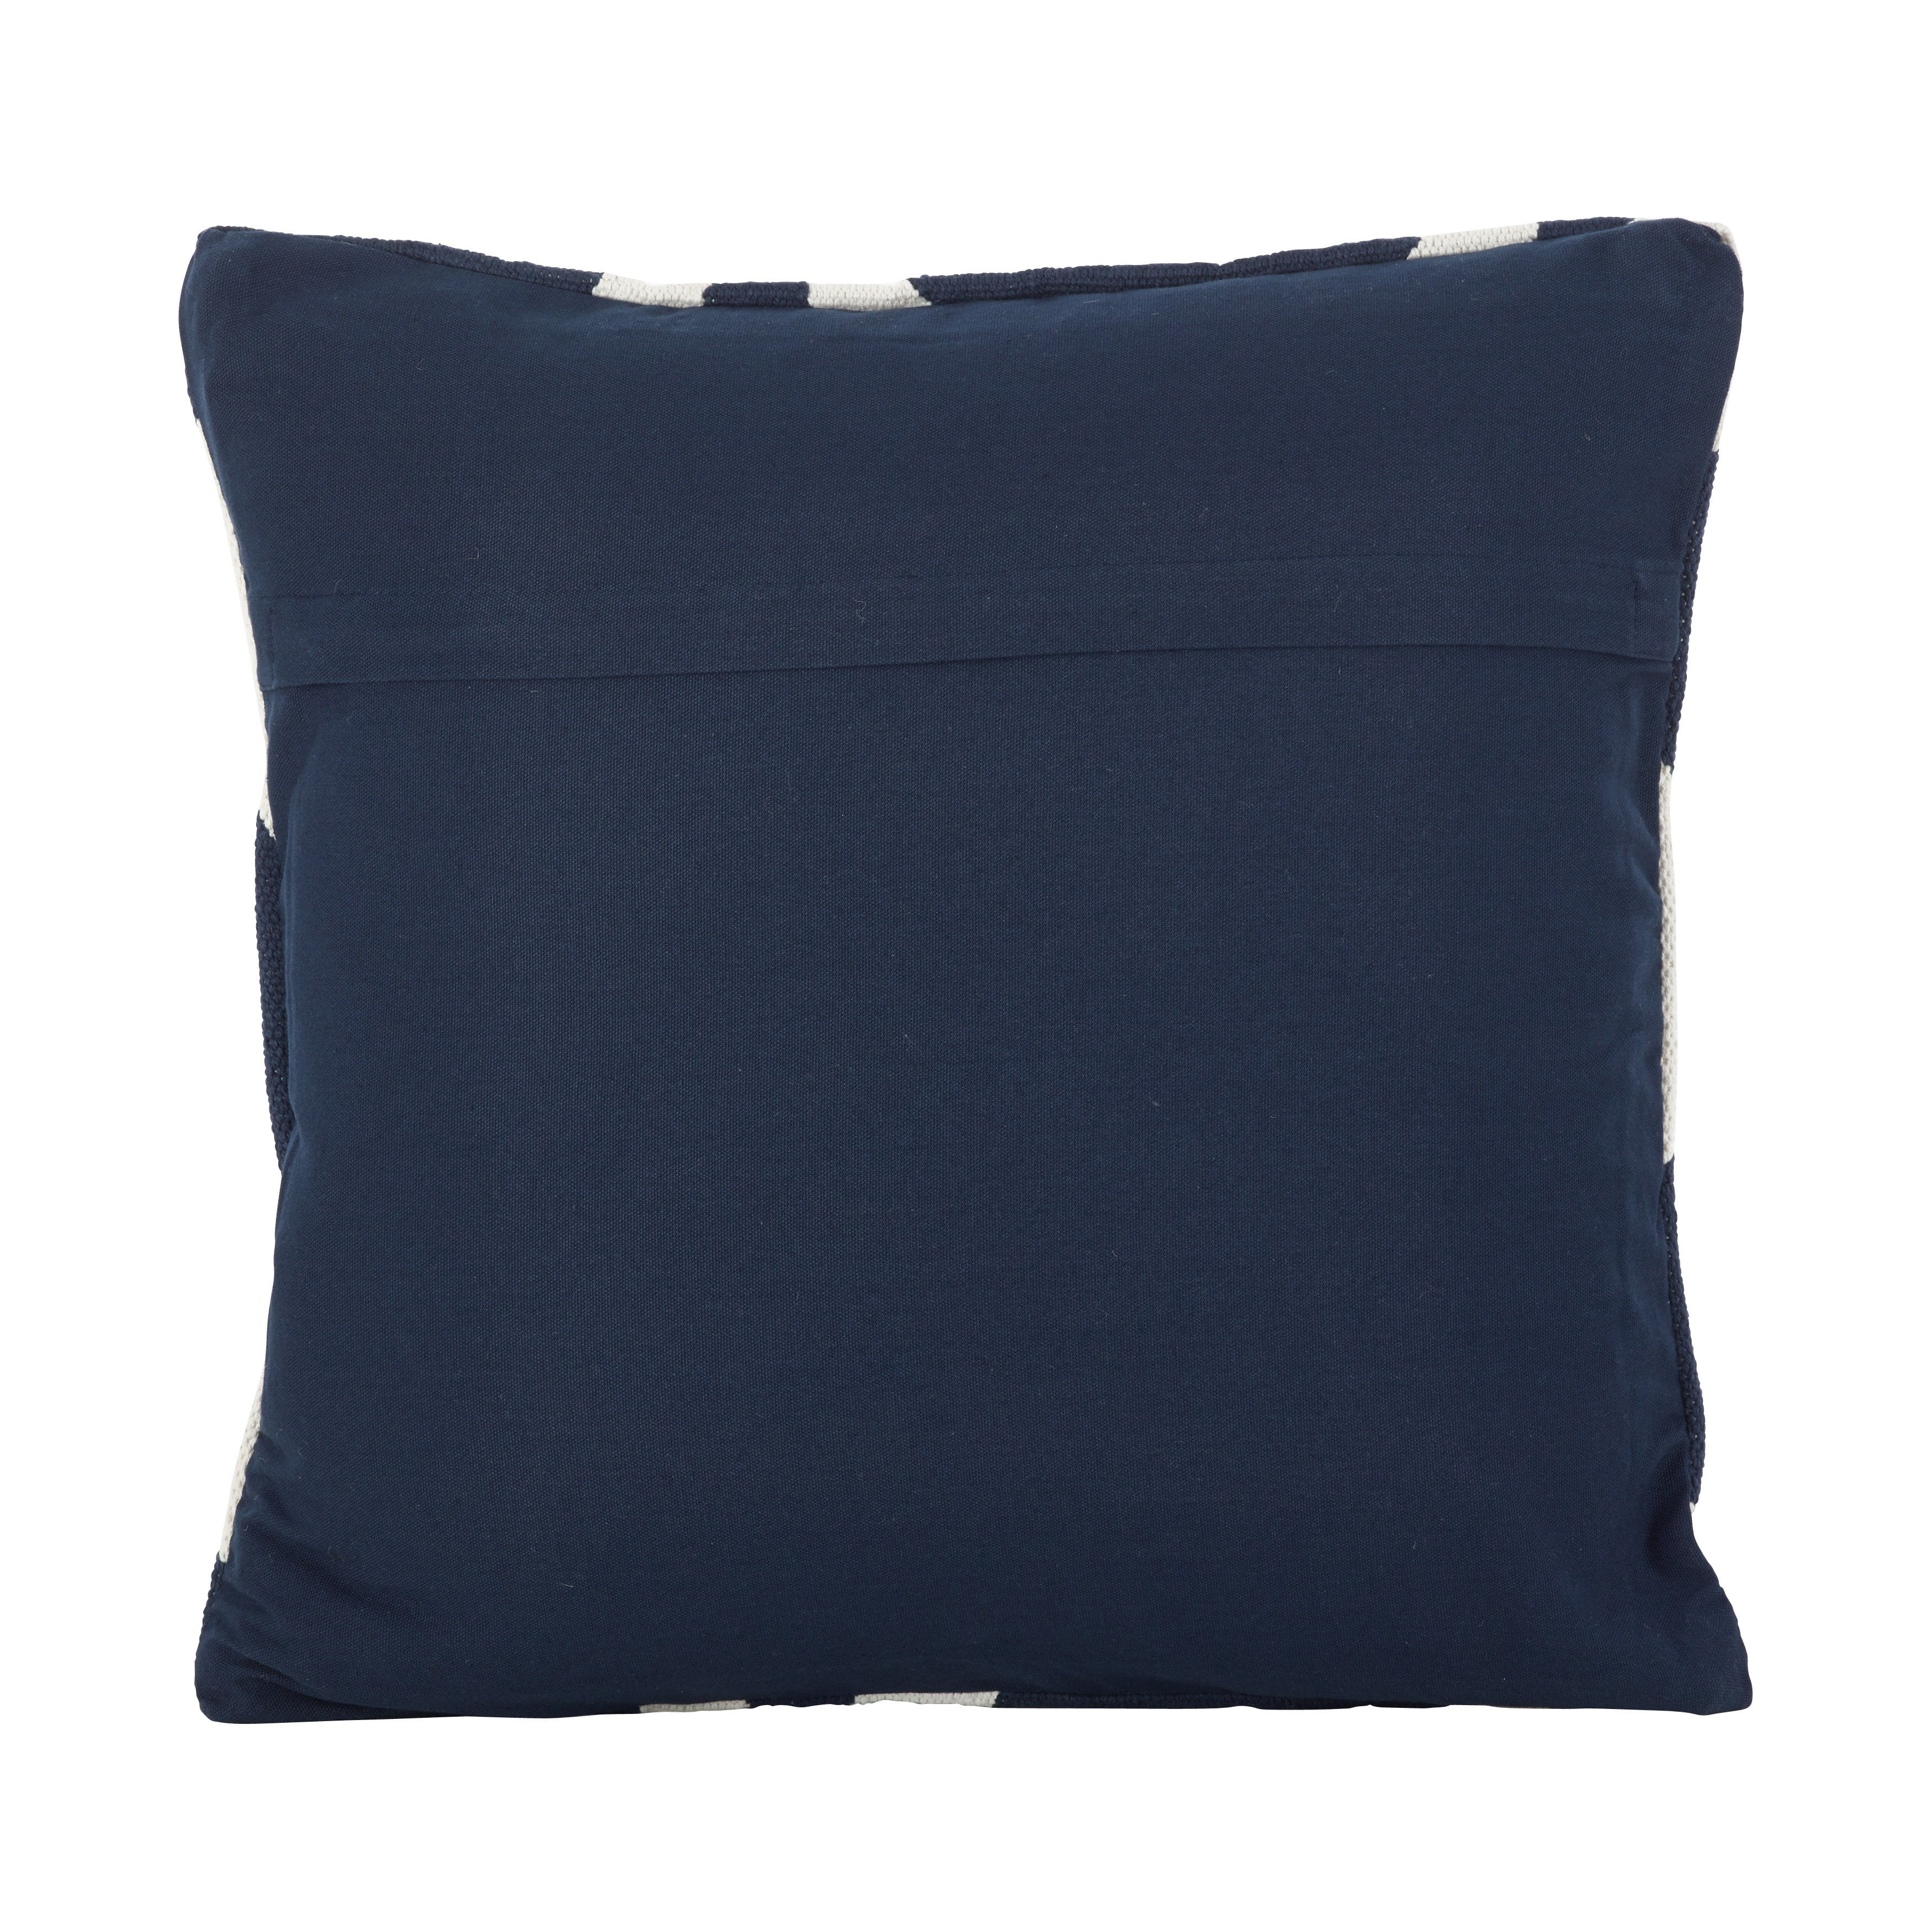 SARO LIFESTYLE Kilim Turkish Design Pattern Cotton Down Filled Throw Pillow 20 x 20 Navy Blue